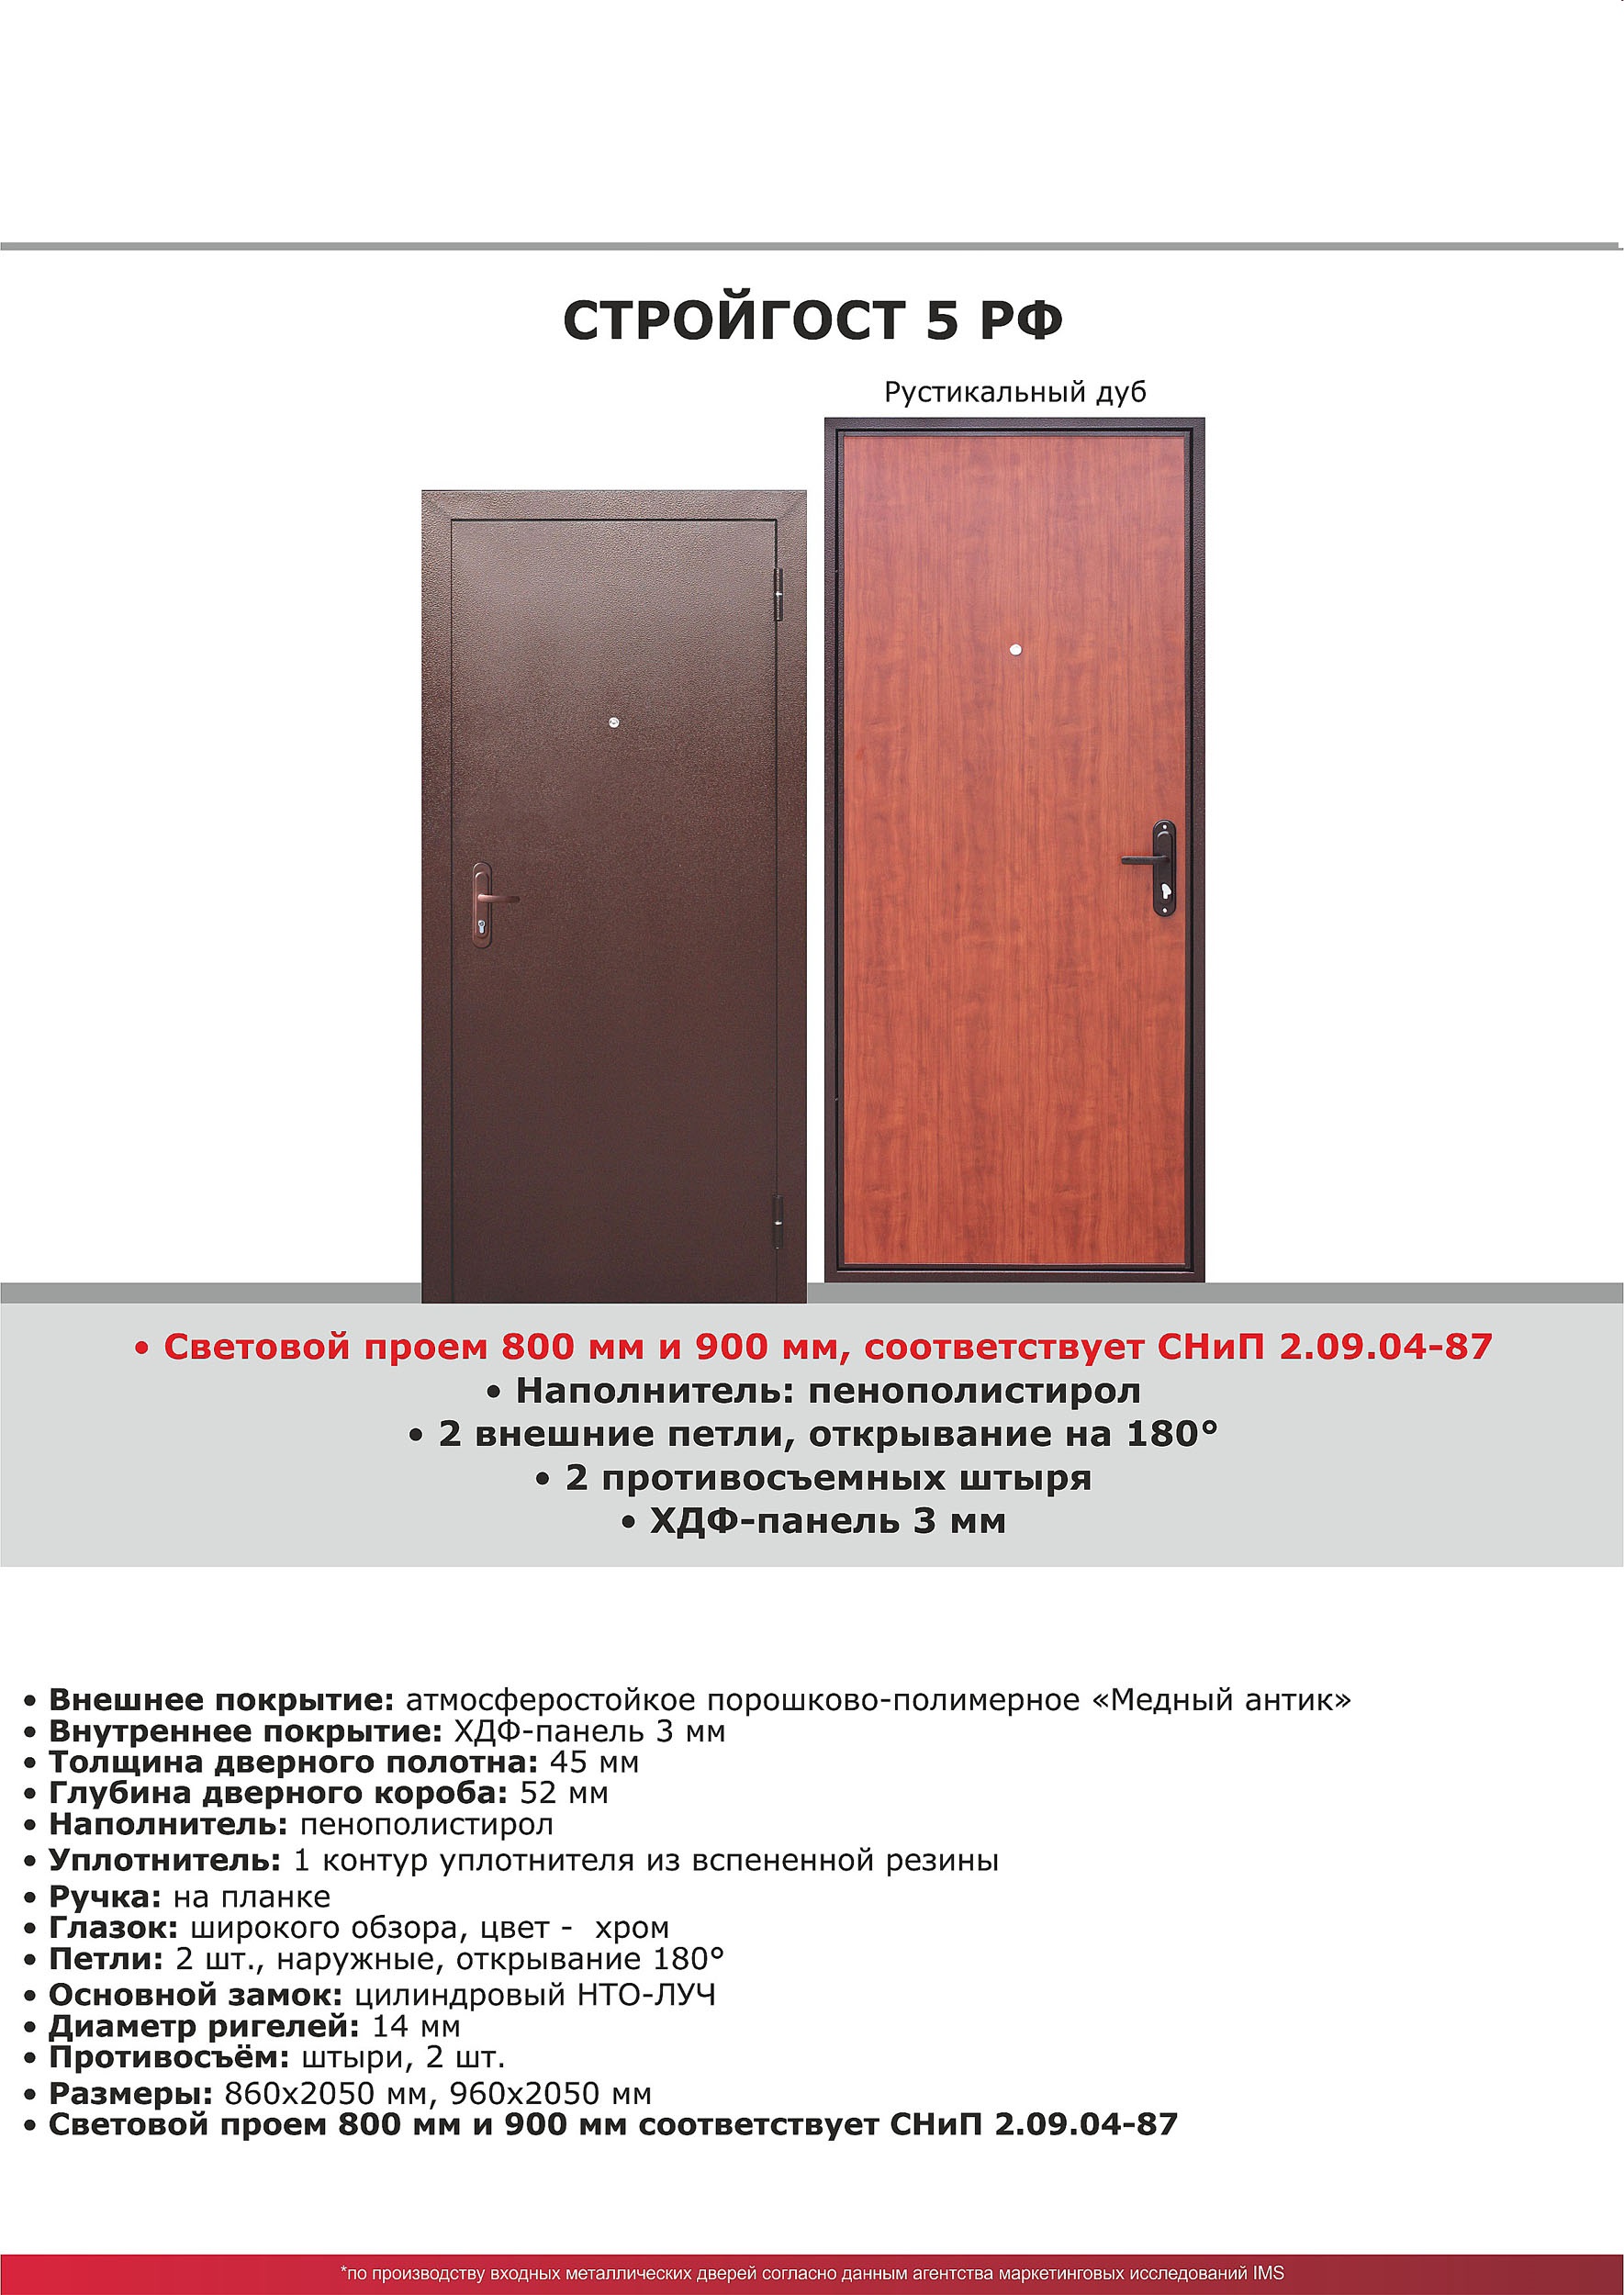 Входная дверь Стройгост 5 РФ Рустикальный дуб 2050*960  лев УТ000017817